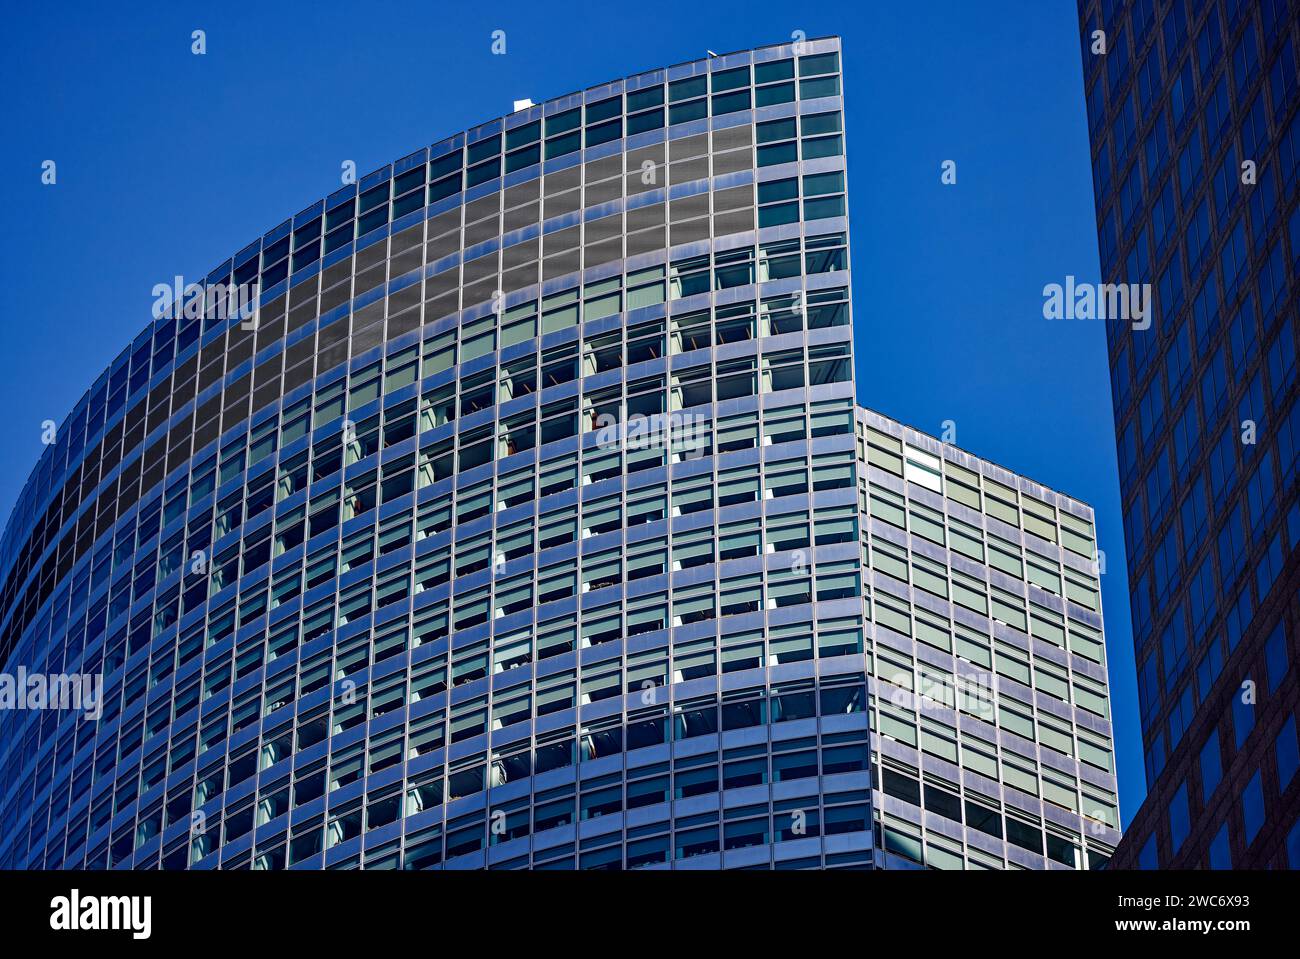 Henry Cobb entwarf den Goldman Sachs Tower in zwei Abschnitten und einer gekrümmten Fassade, um die für die Zonierung vorgeschriebenen Höhen- und Sichtlinien einzuhalten. Stockfoto